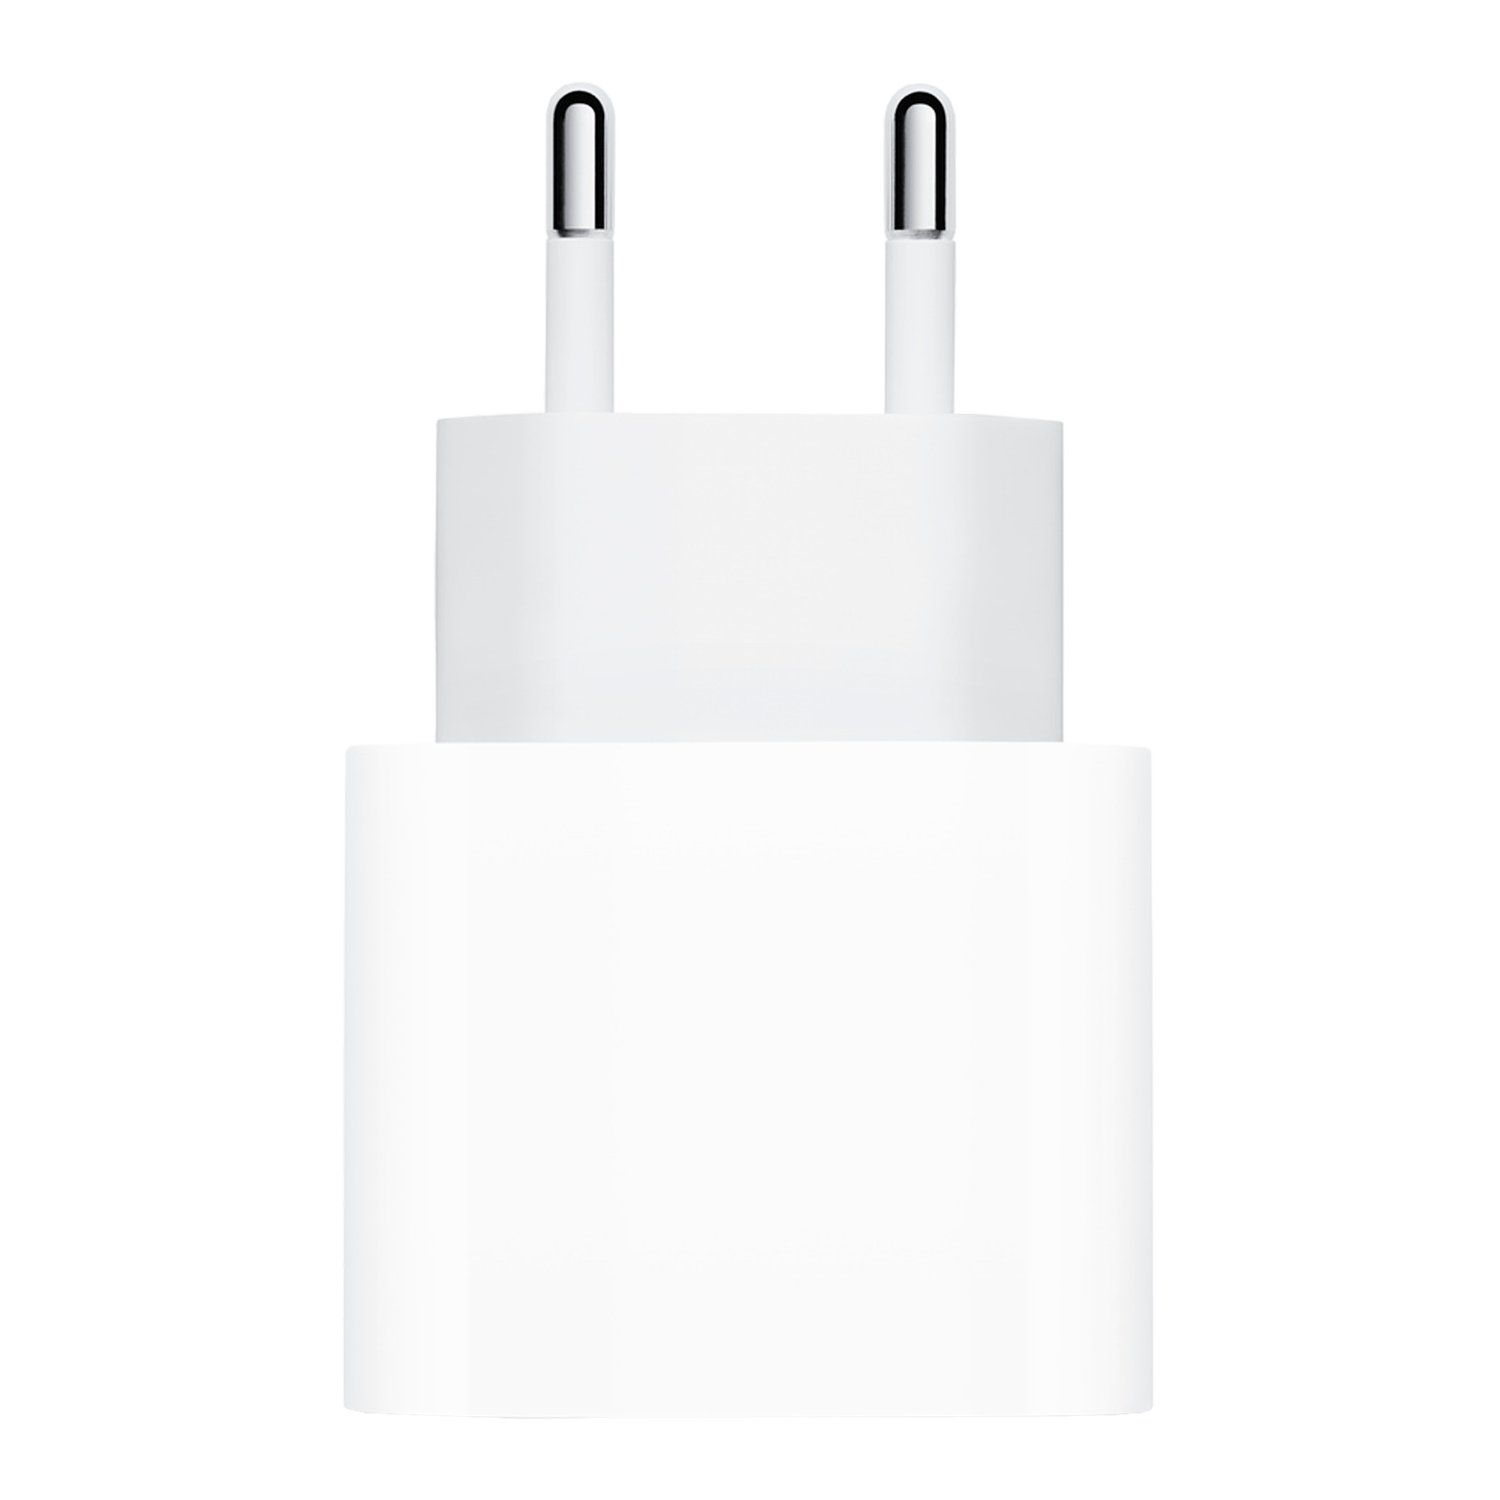 Carregador Apple USB-C MHJE3ZM 20W - Branco (Paralelo)